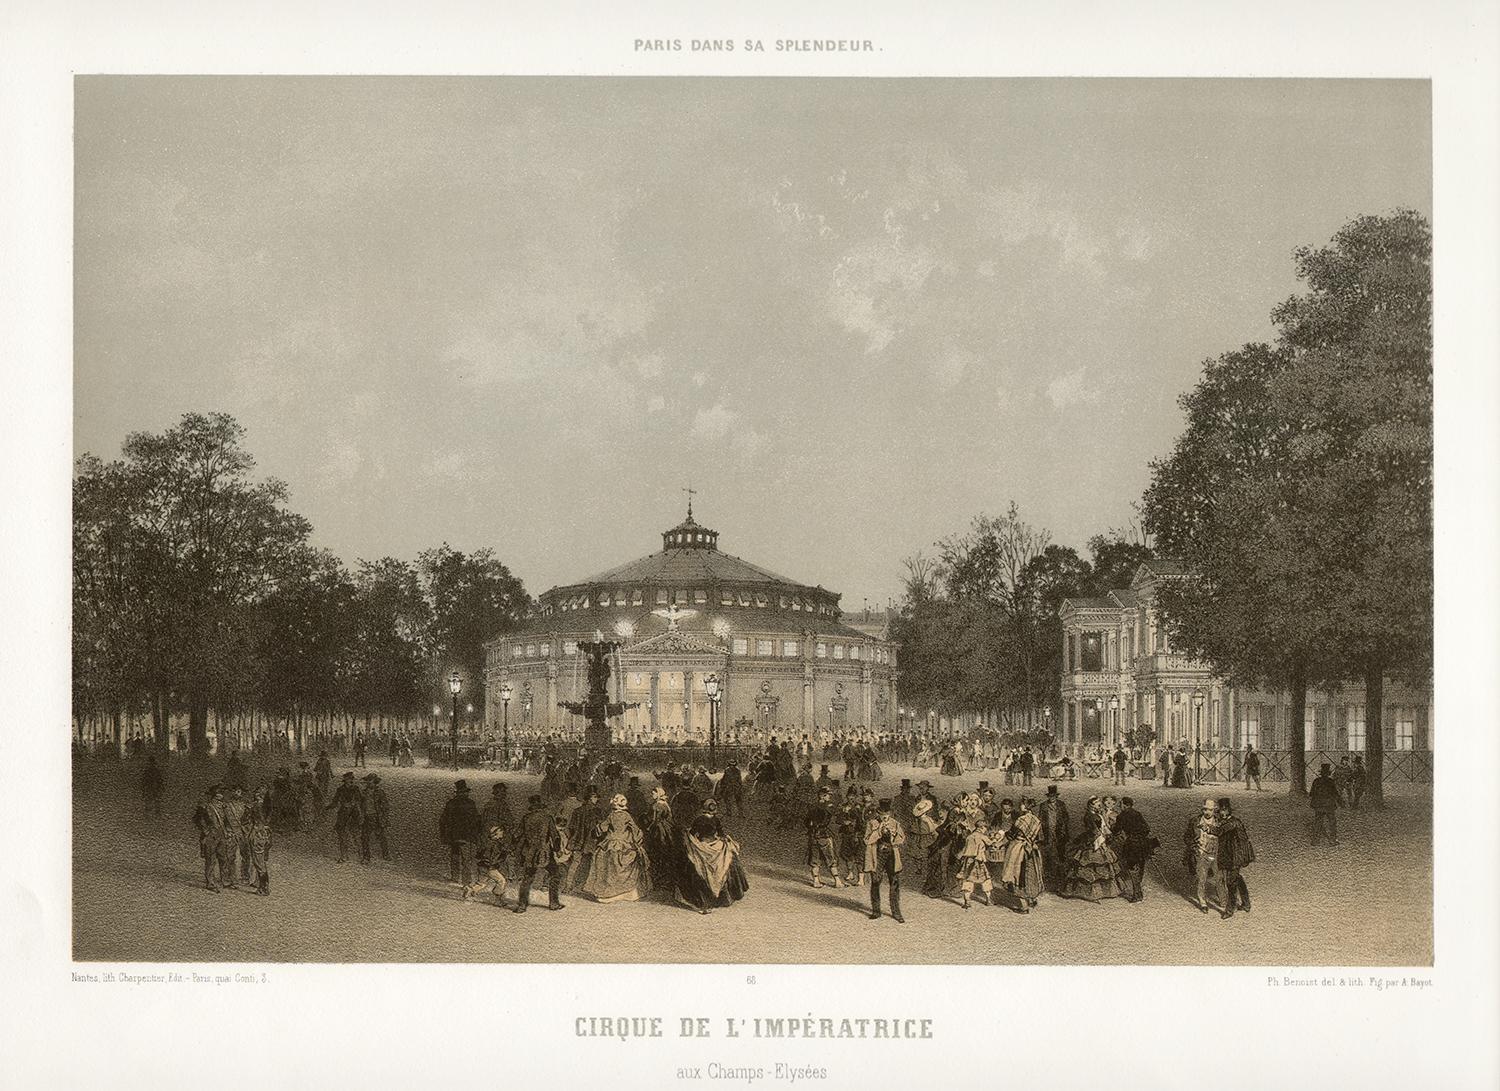 Paris - Cirque de L'Imperatrice, French lithograph, 1861